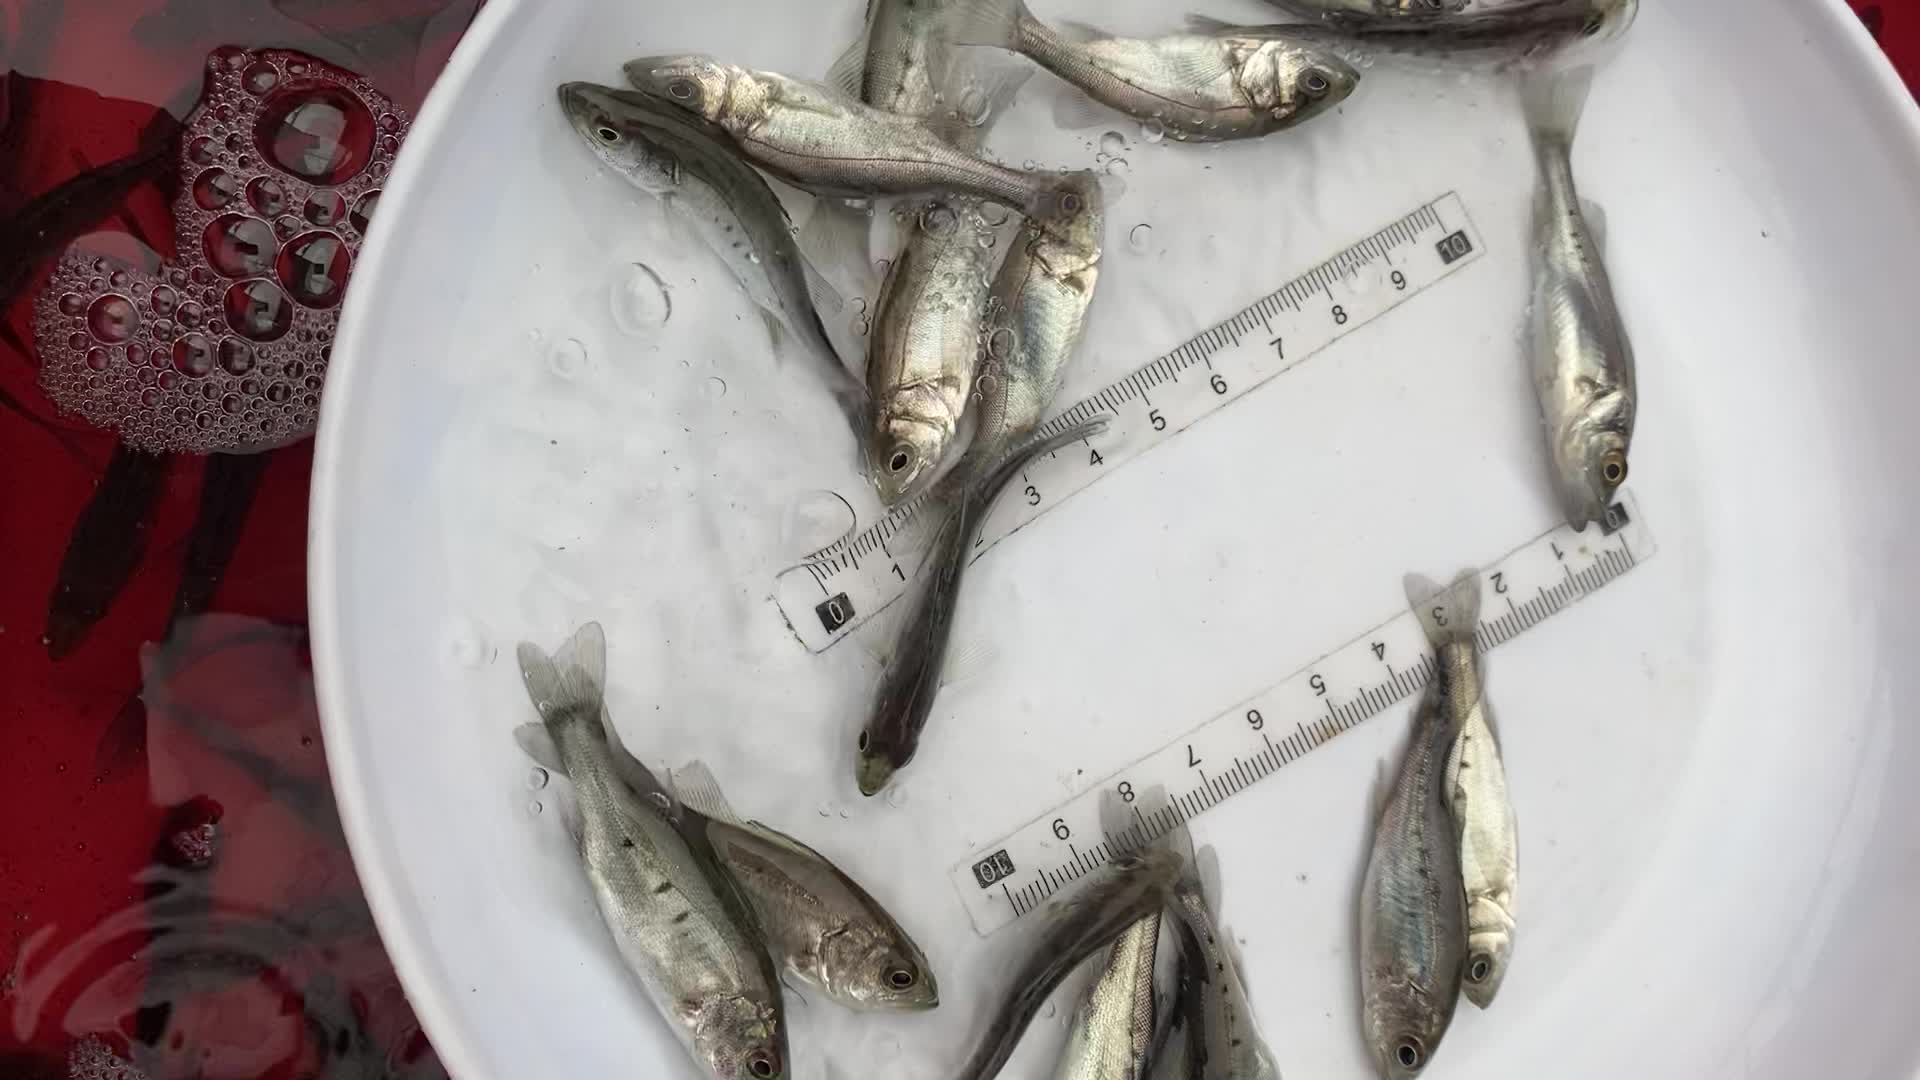 【【***】淡水养殖七星鲈鱼苗 生长快 又名海鲈鱼】视频介绍 